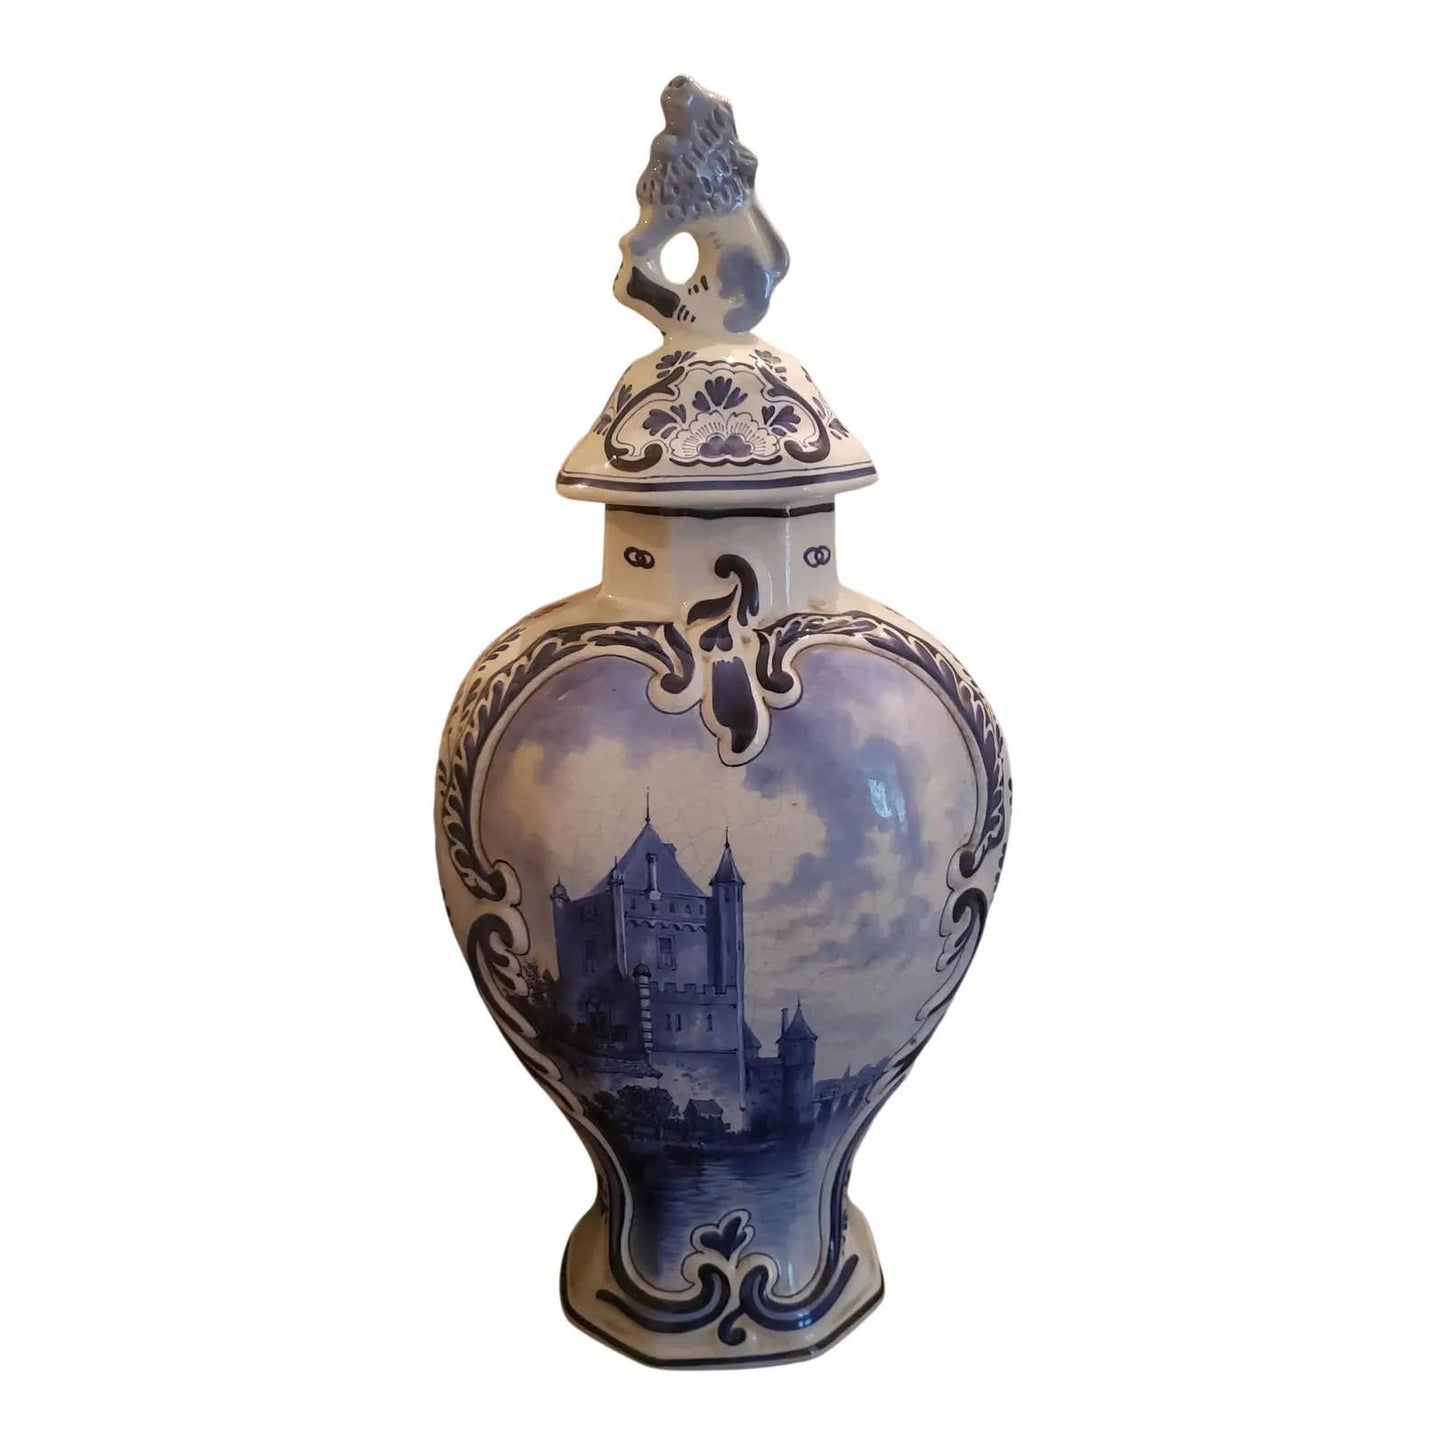 1886 Royal Delft Ginger Jar Vase